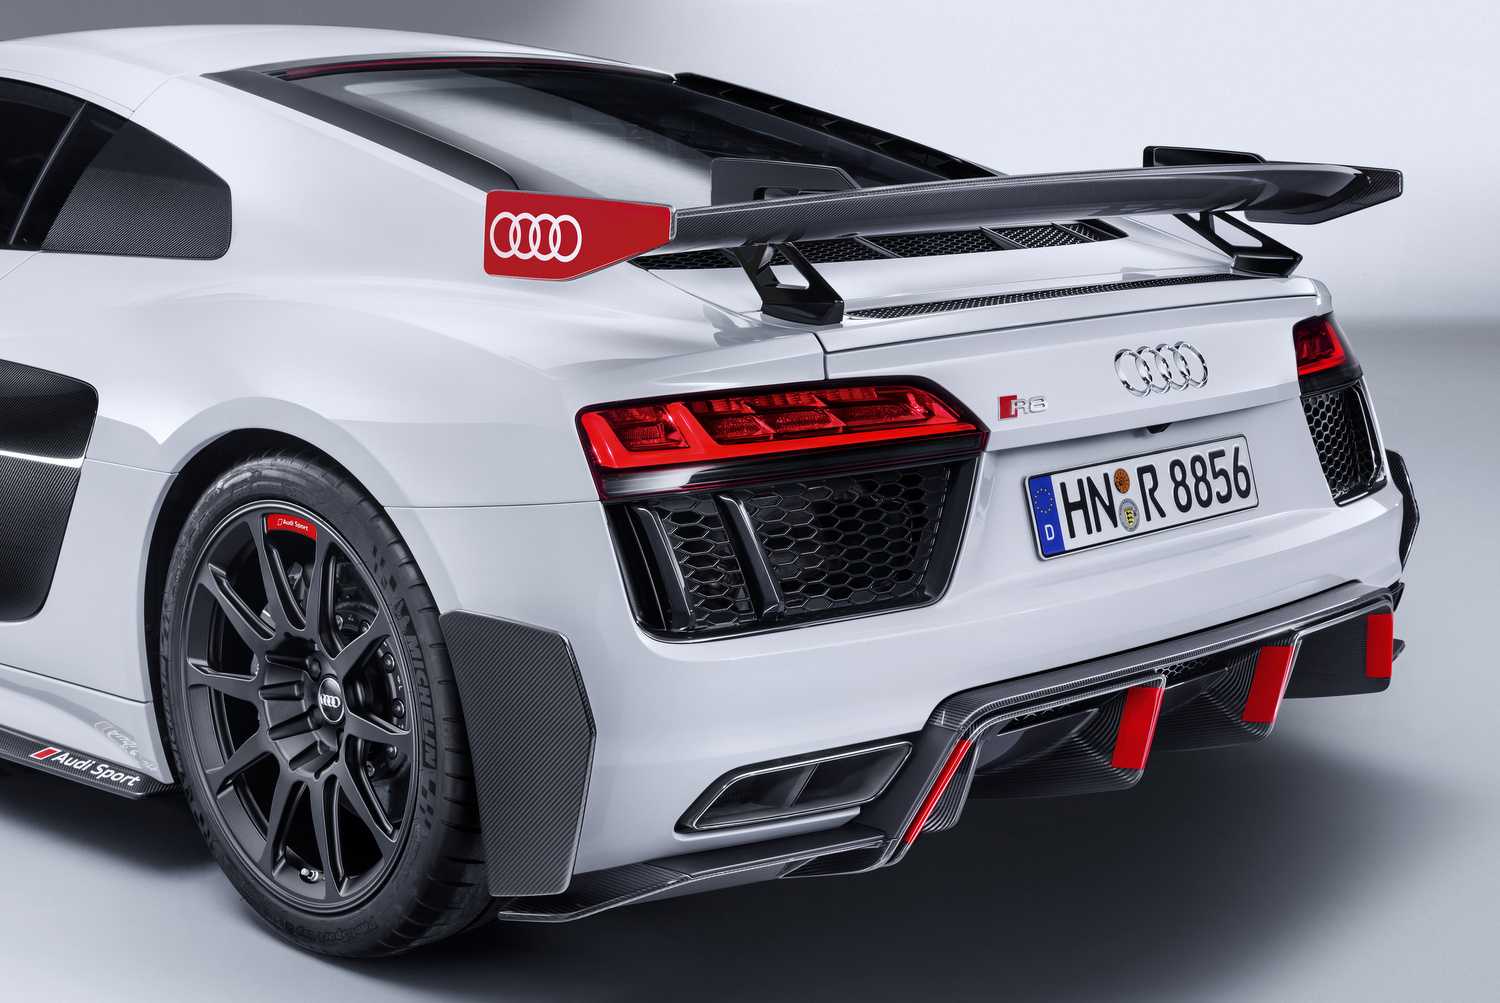 Audi Sport Performance alkatrészek az Audi R8 és Audi TT modellekhez 1